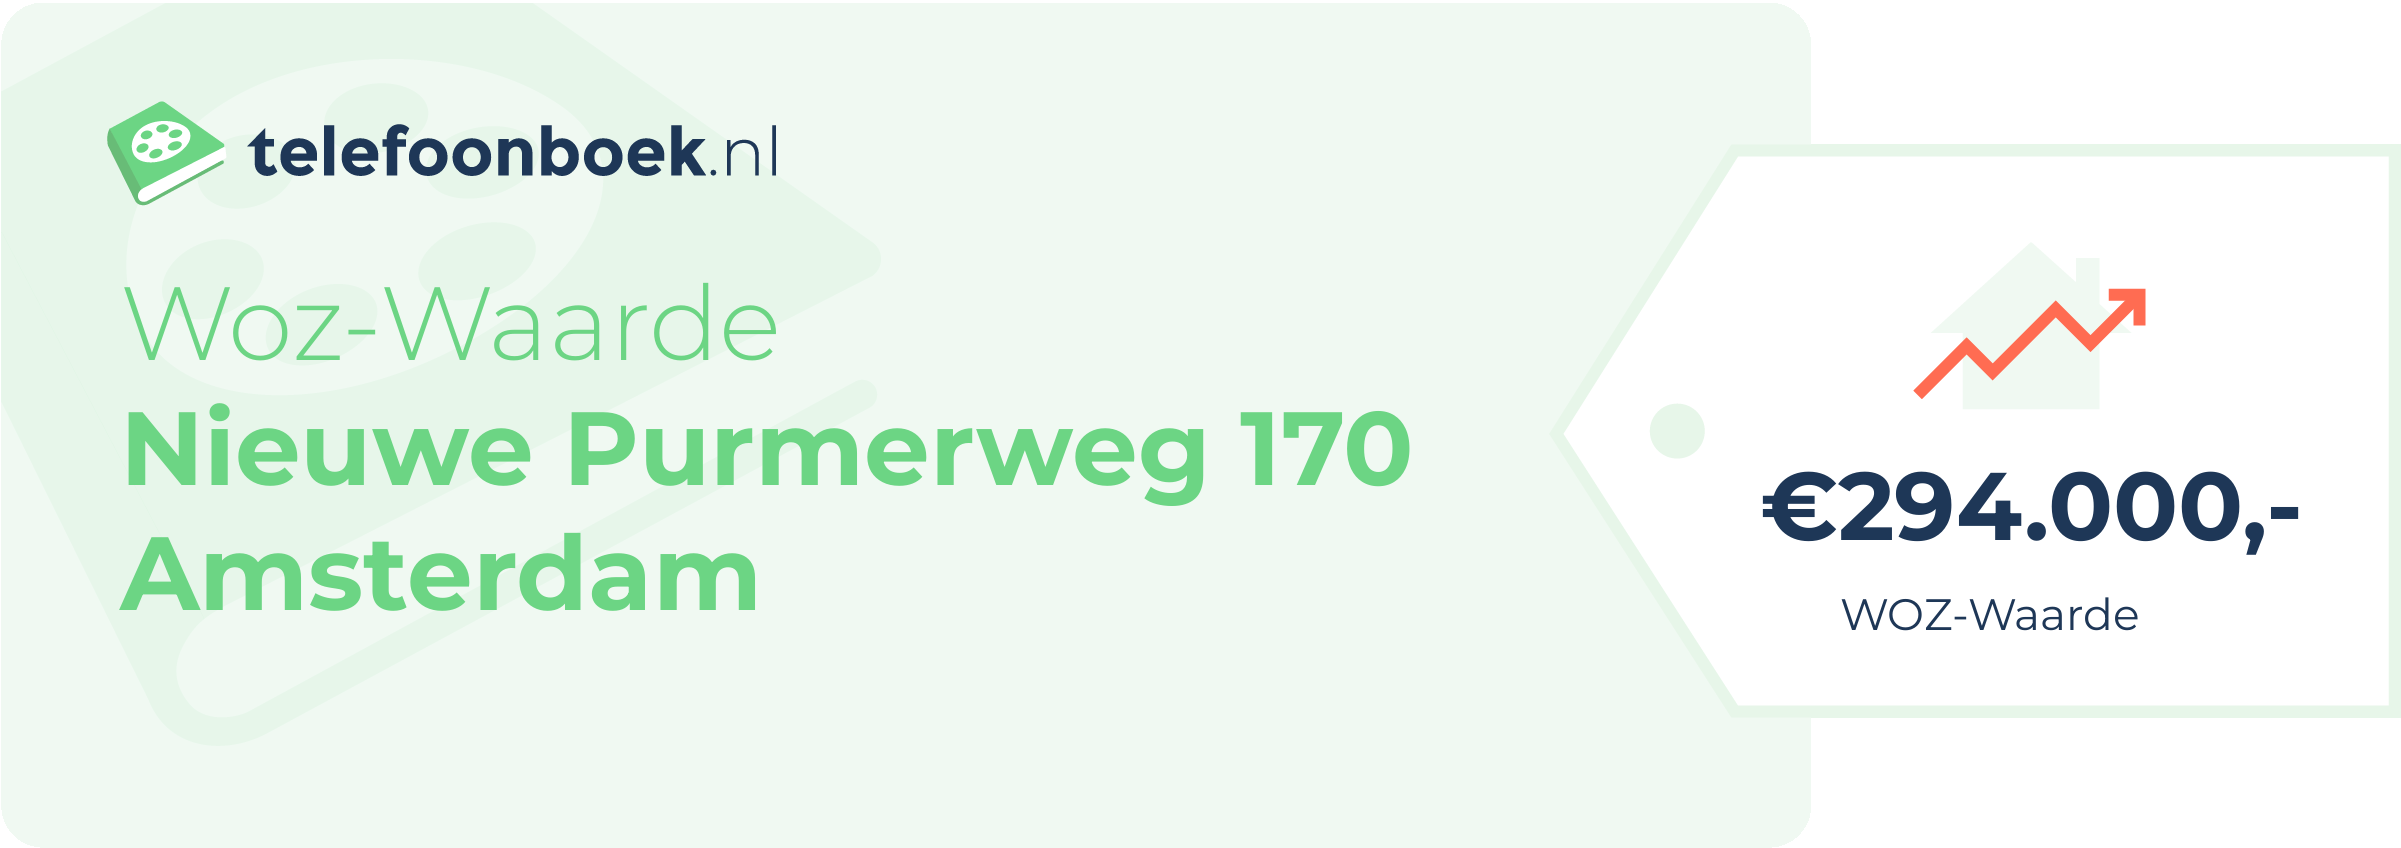 WOZ-waarde Nieuwe Purmerweg 170 Amsterdam